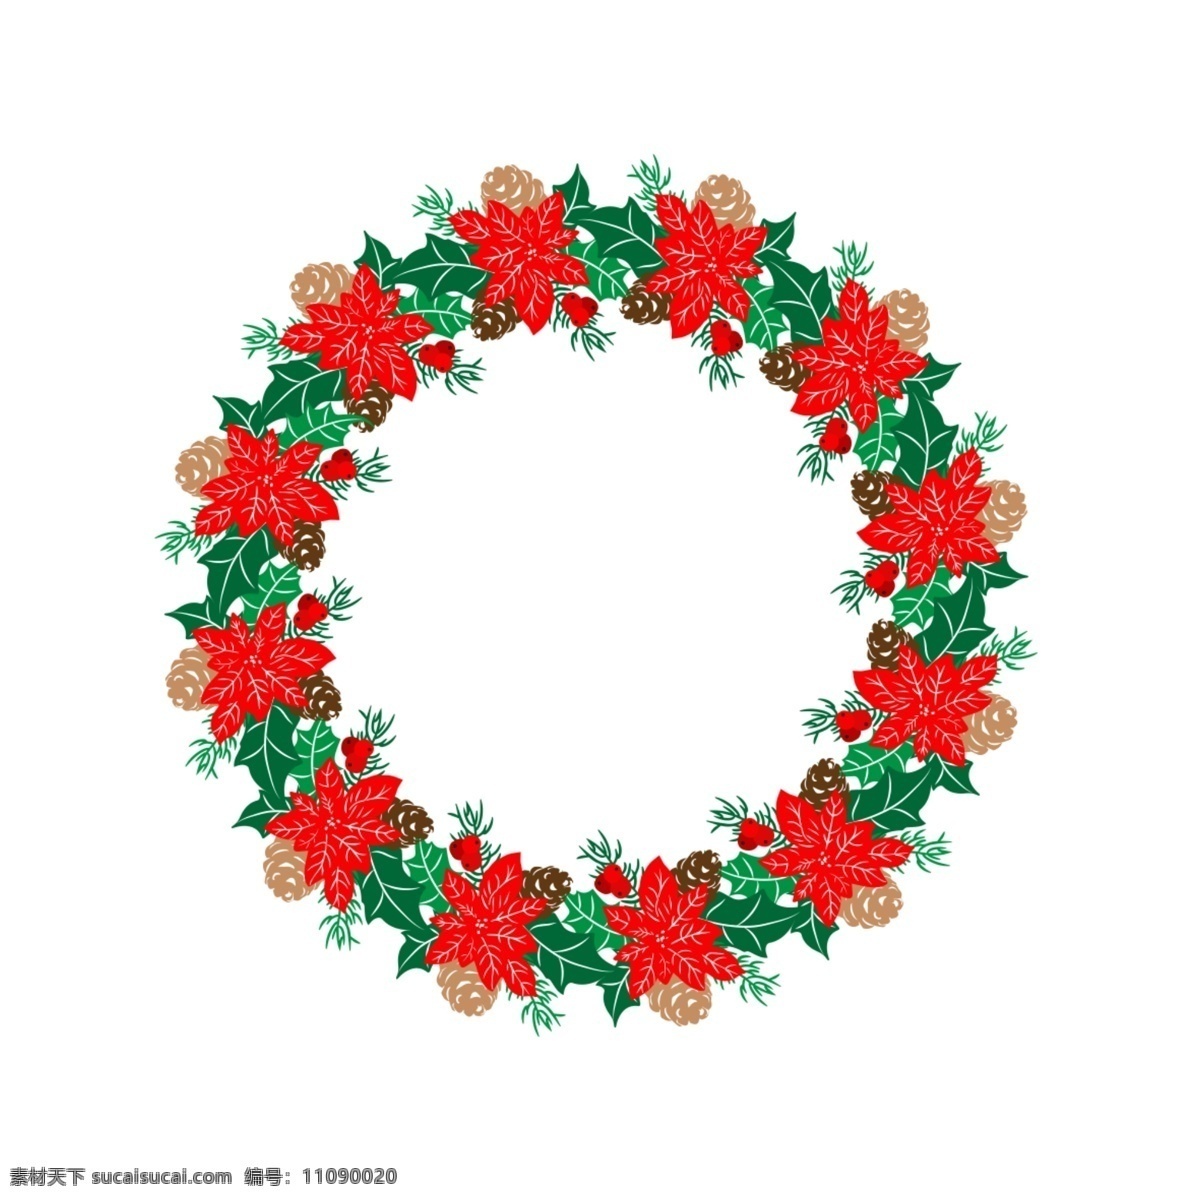 矢量 圣诞 元素 花环 圣诞元素 装饰物 节日 矢量圣诞 圣诞花环